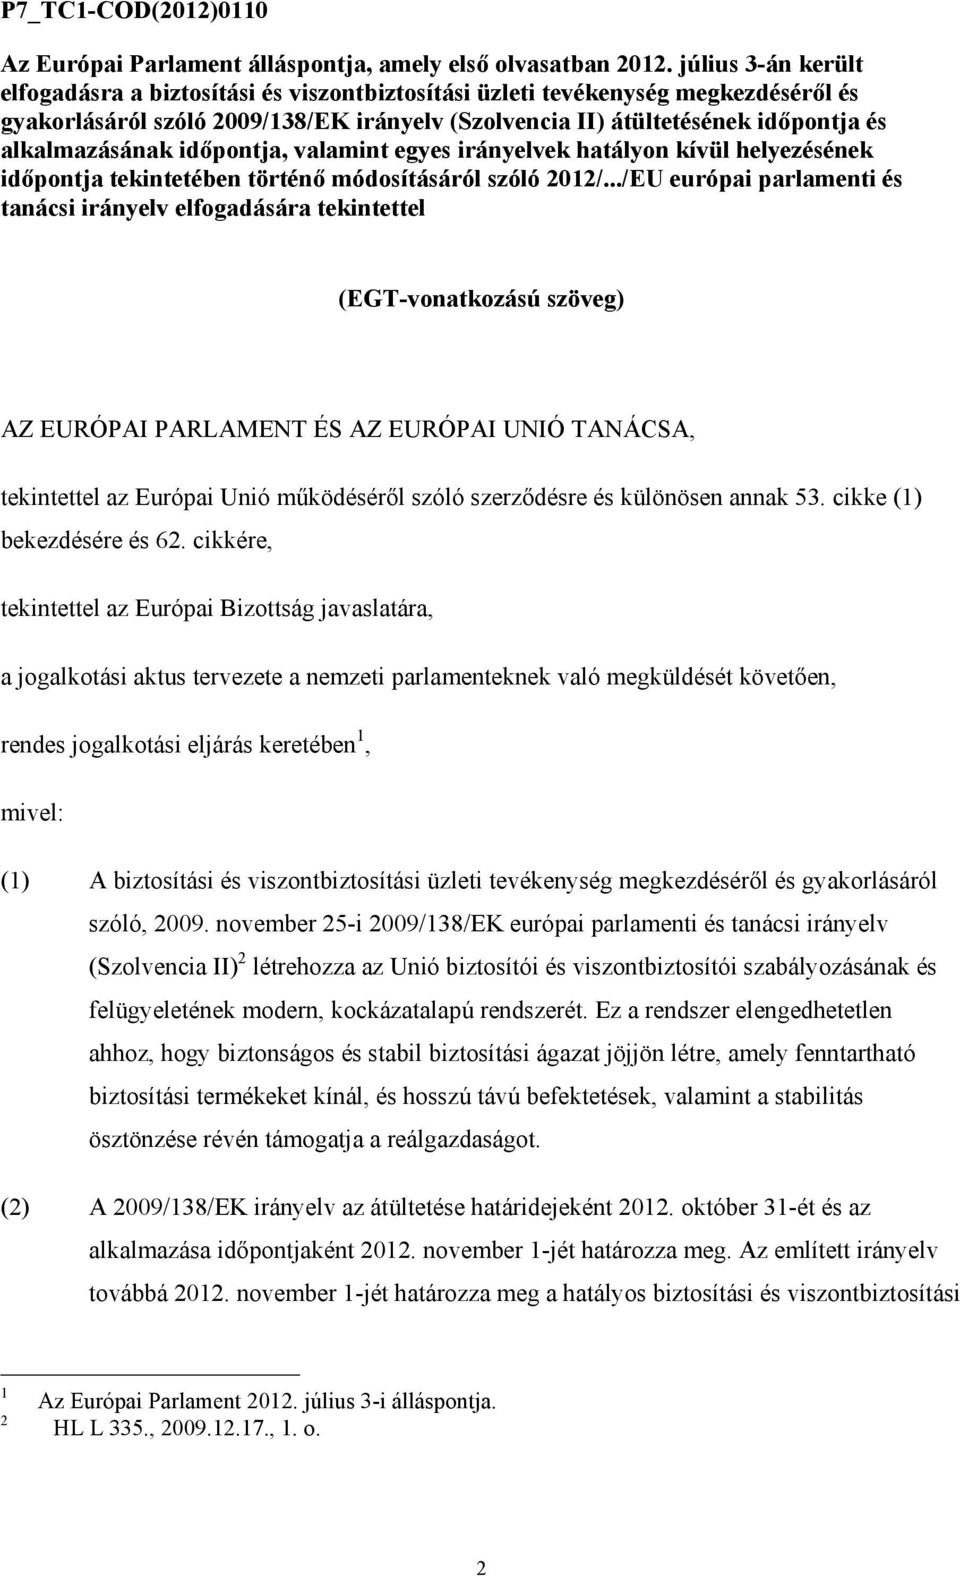 alkalmazásának idıpontja, valamint egyes irányelvek hatályon kívül helyezésének idıpontja tekintetében történı módosításáról szóló 2012/.